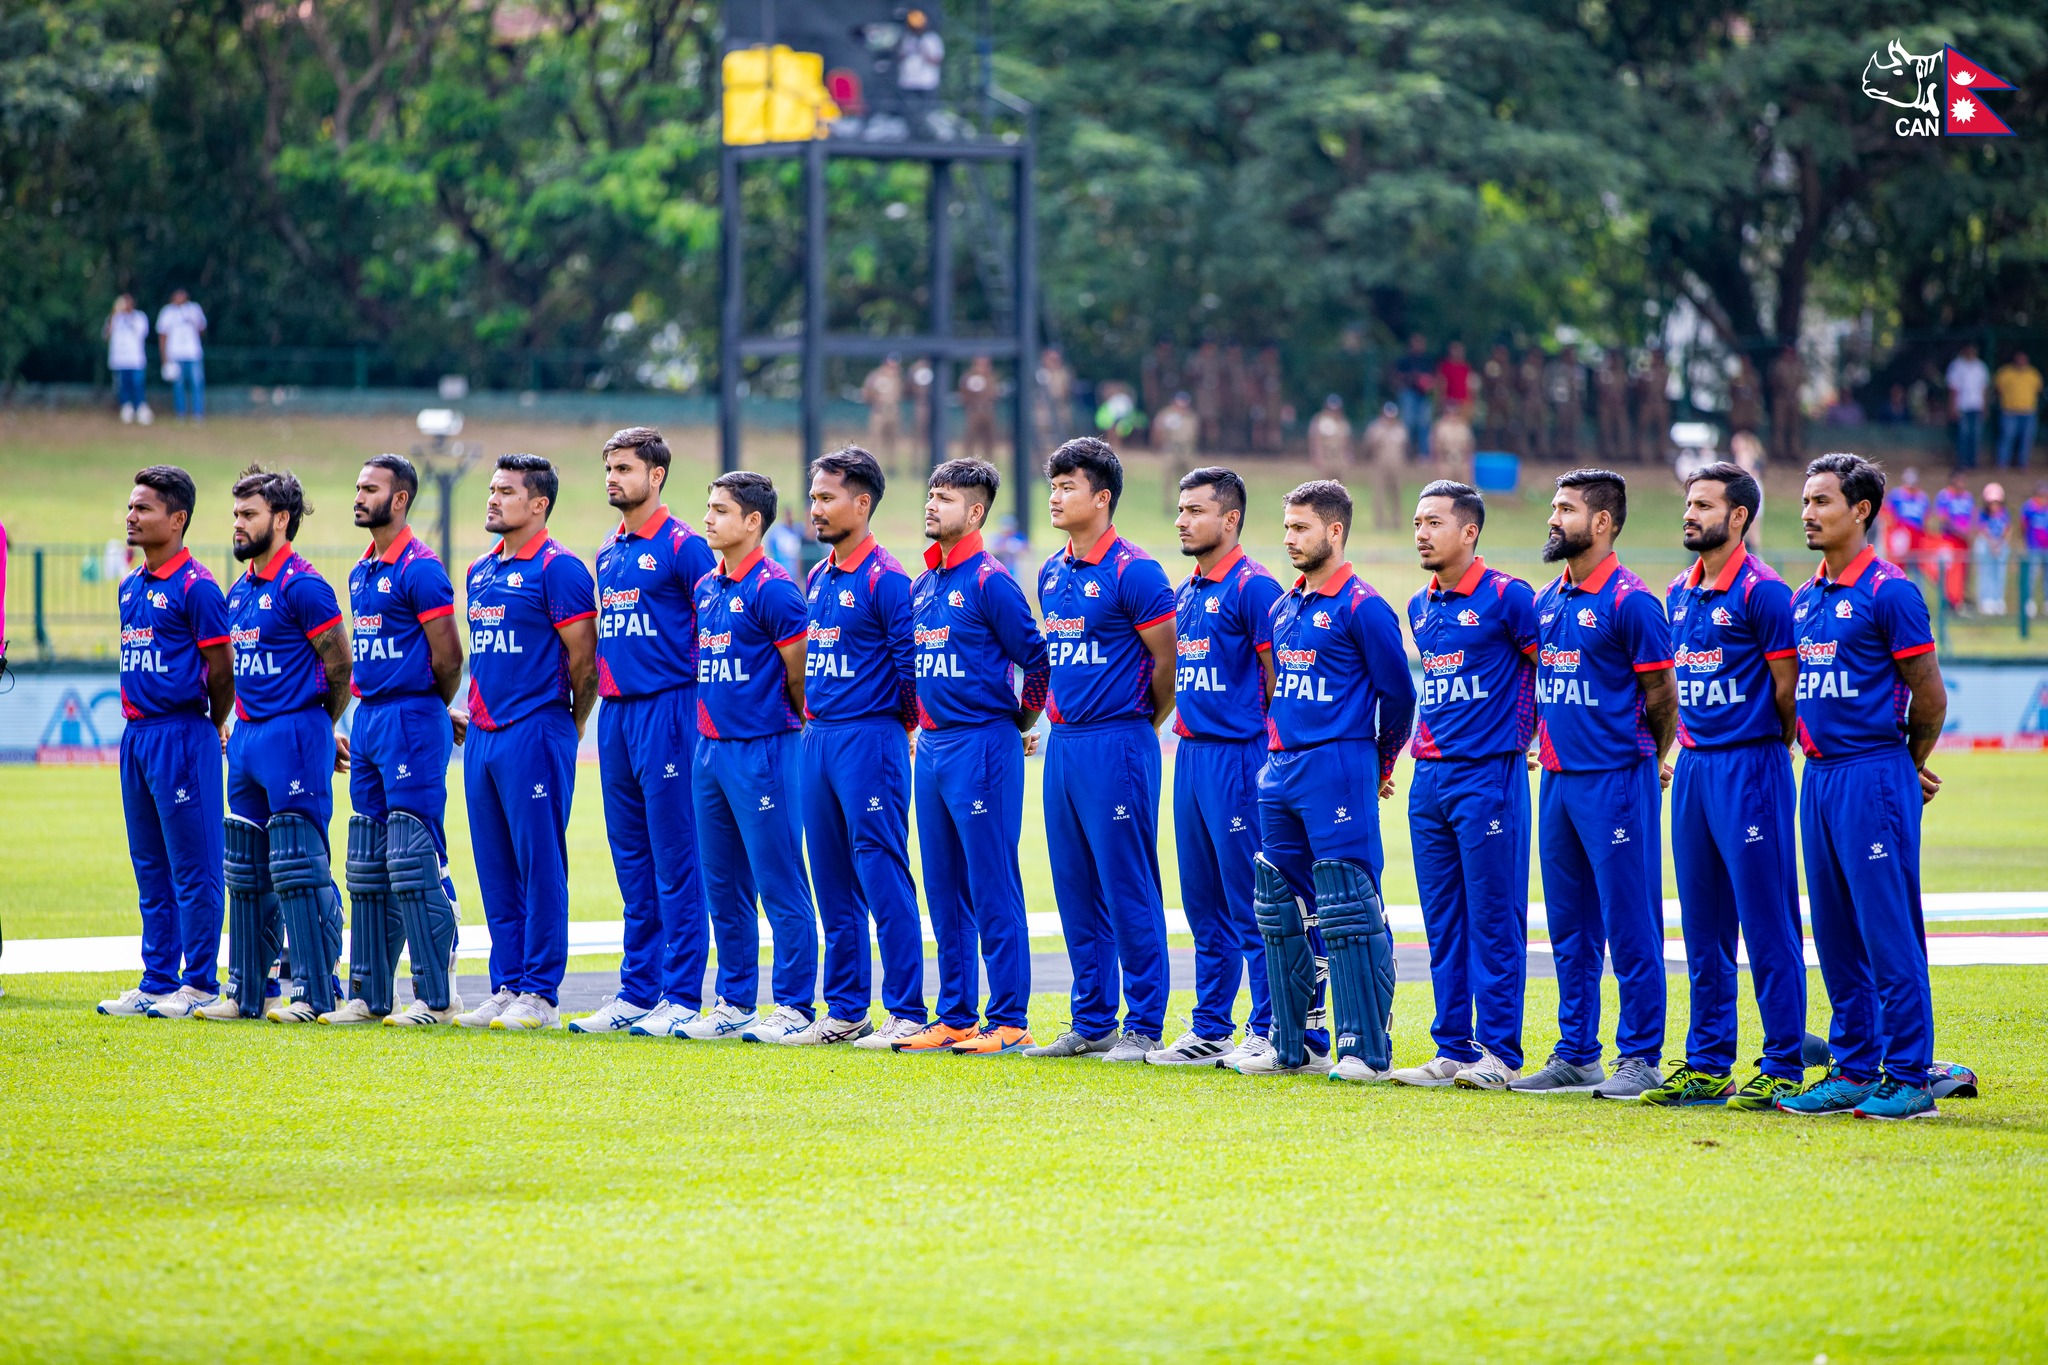 भारतसितको पराजयसँगै नेपाल एसिया कप क्रिकेटबाट बाहिरियो